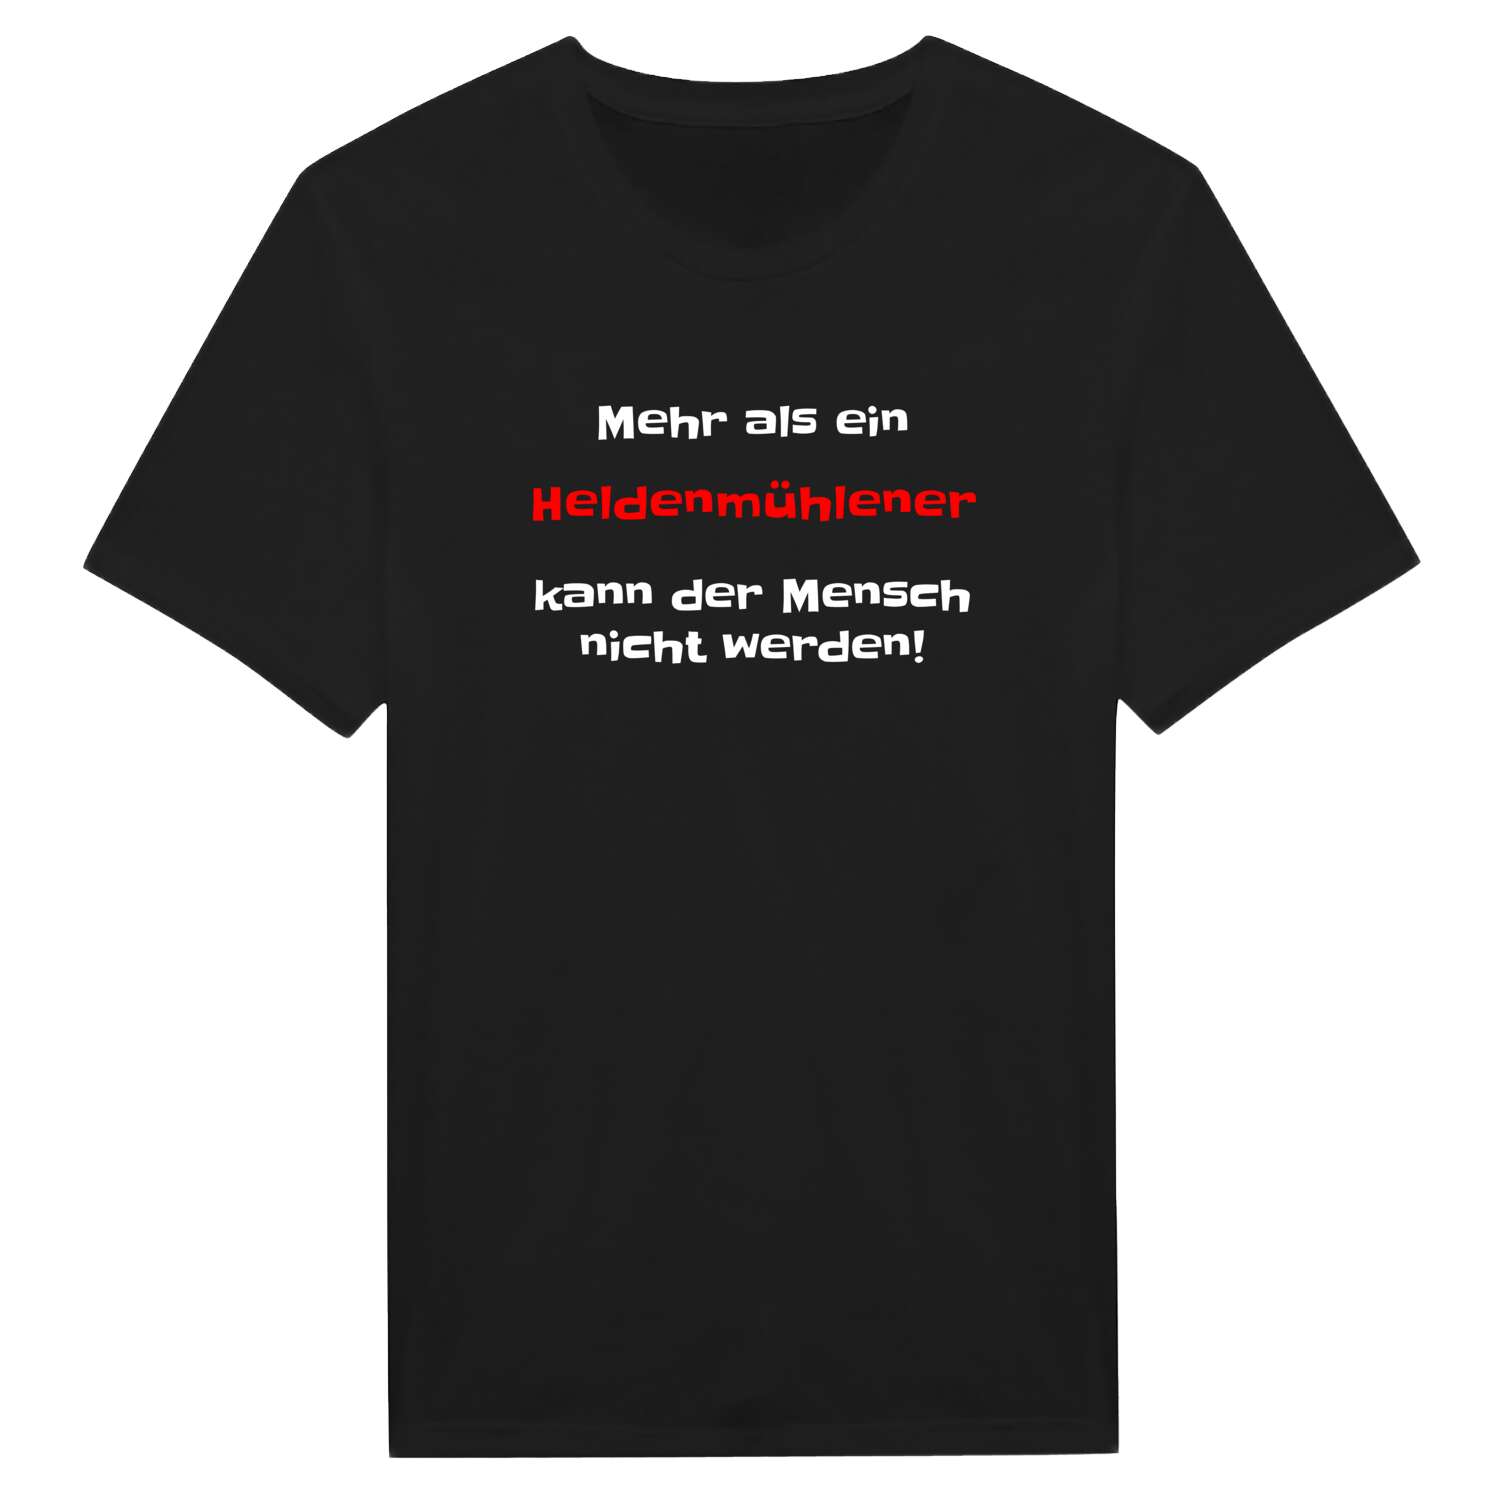 Heldenmühle T-Shirt »Mehr als ein«